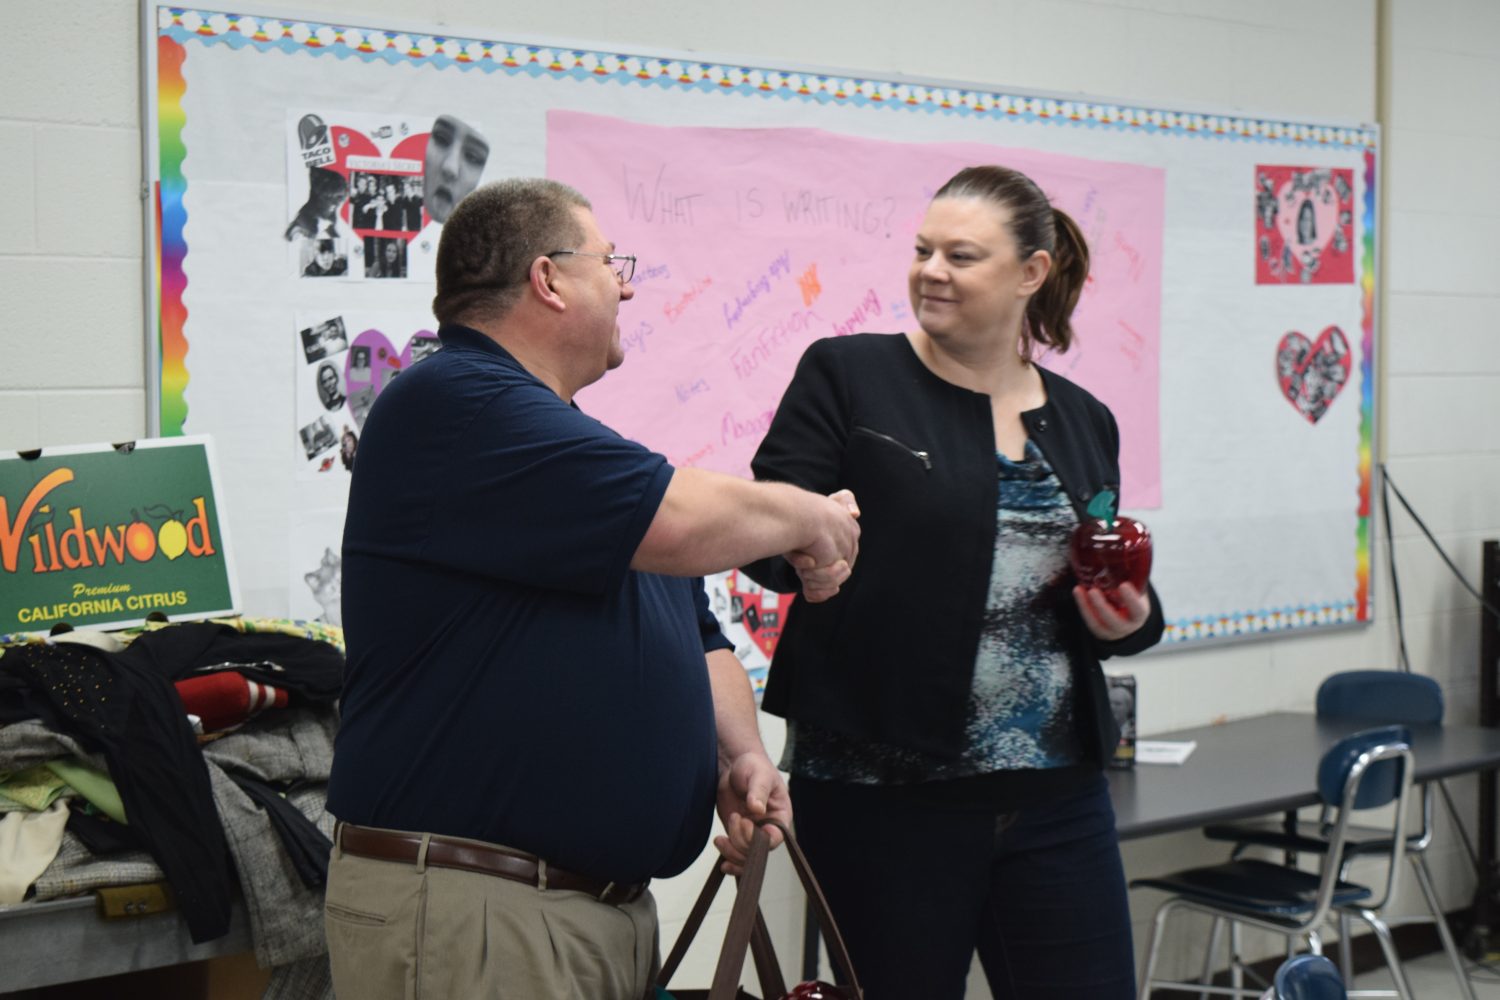 Harley Meyer thanks Spencer teacher Kristin Lohrentz for her commitment to local education.